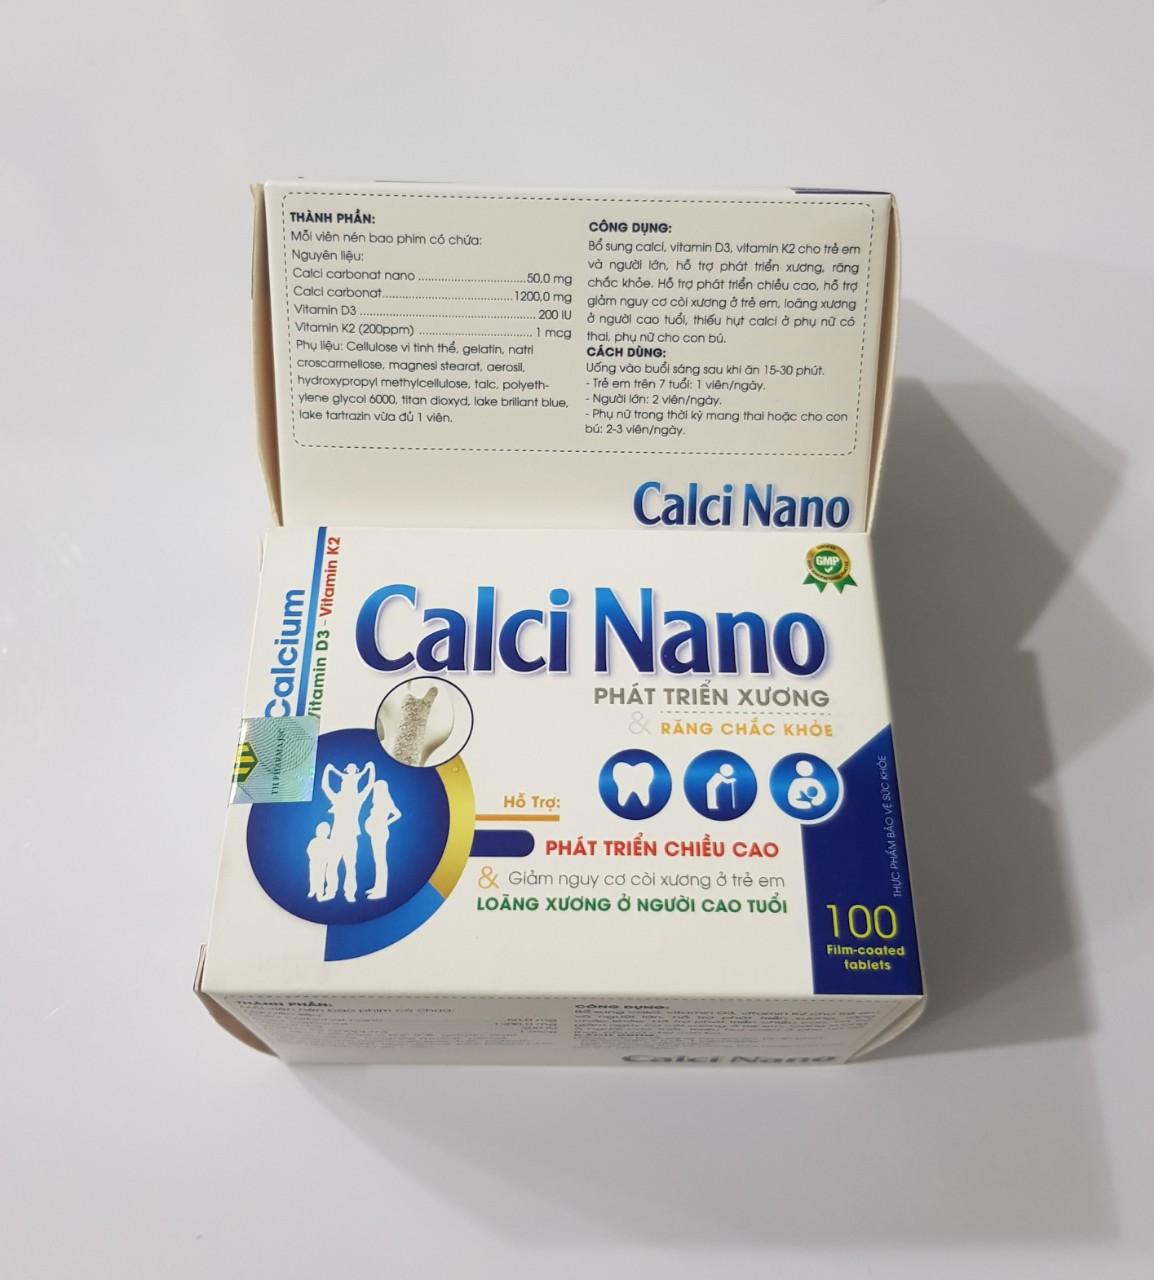 Viên Calci nano: hỗ trợ phát triển chiều cao,giảm nguy cơ còi xương ở trẻ em và loãng xương ở người cao tuổi.